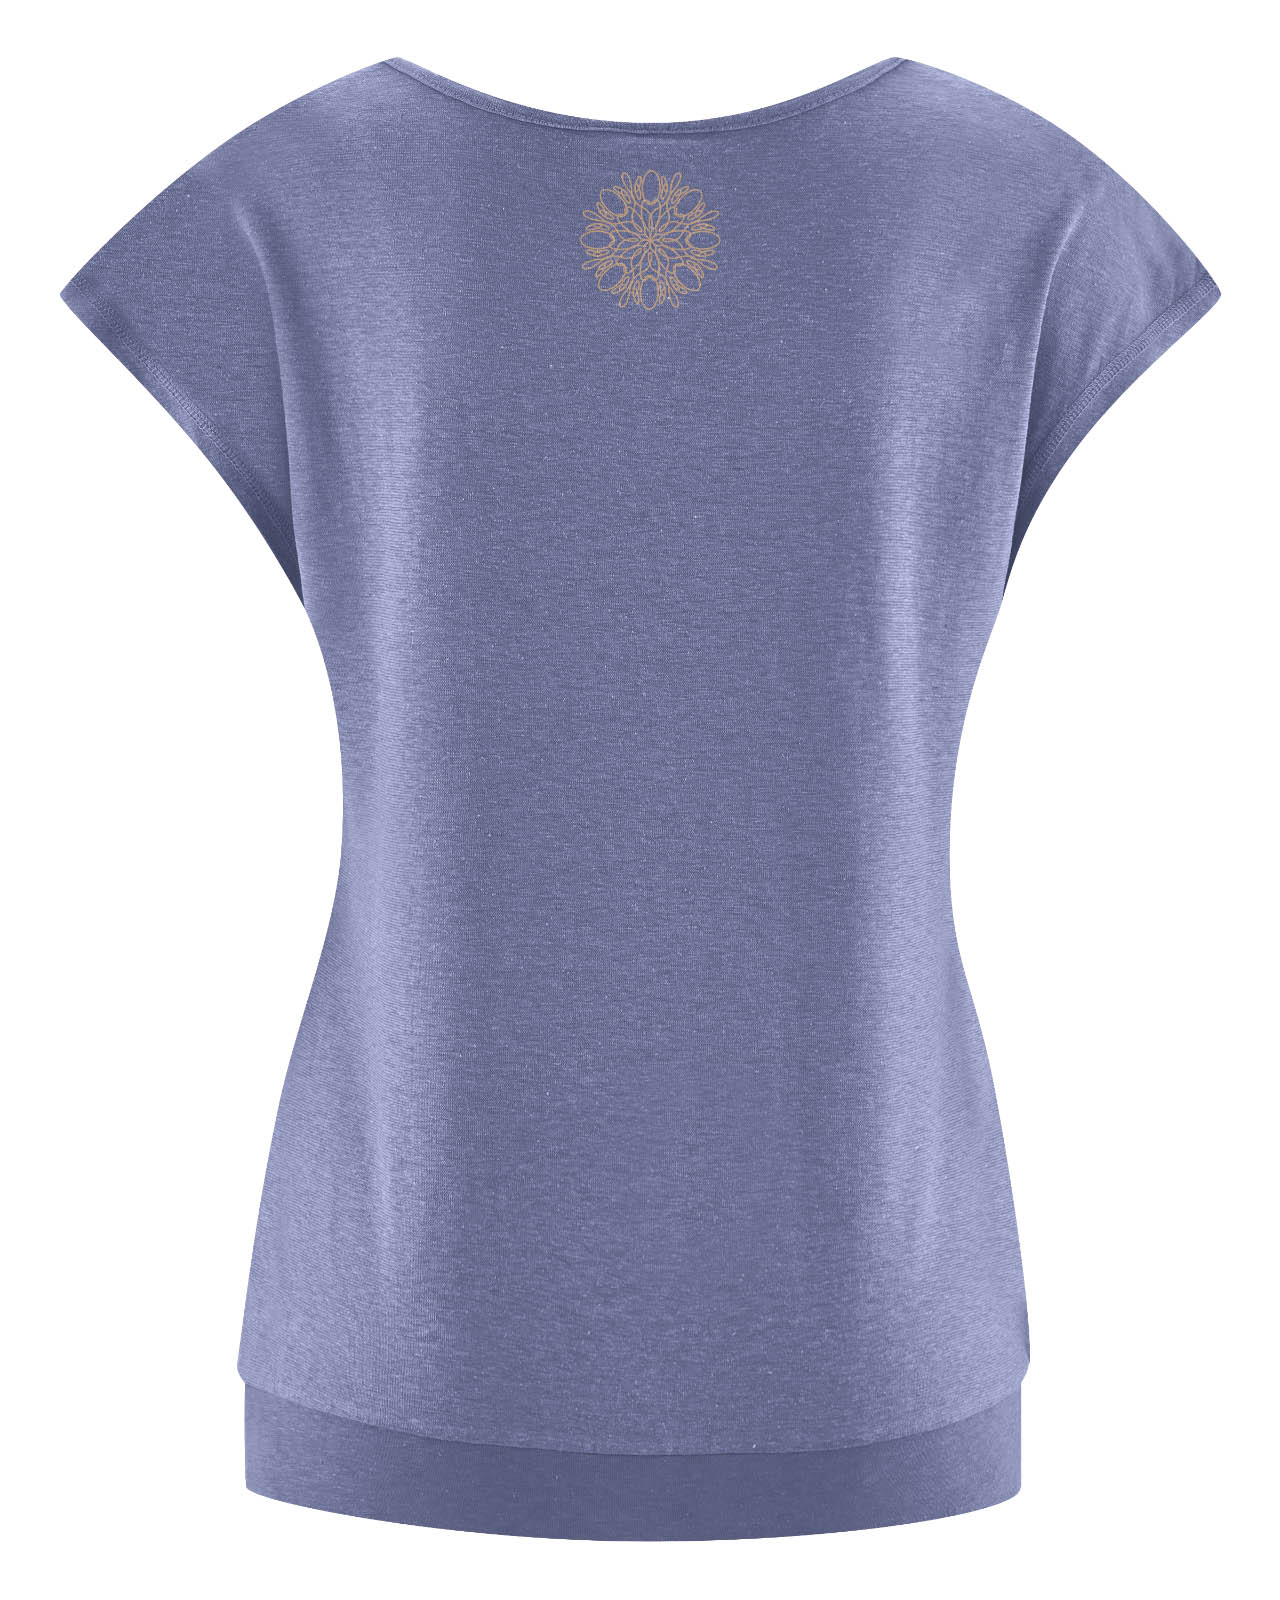 t-shirt matières naturelles DH653_lavender